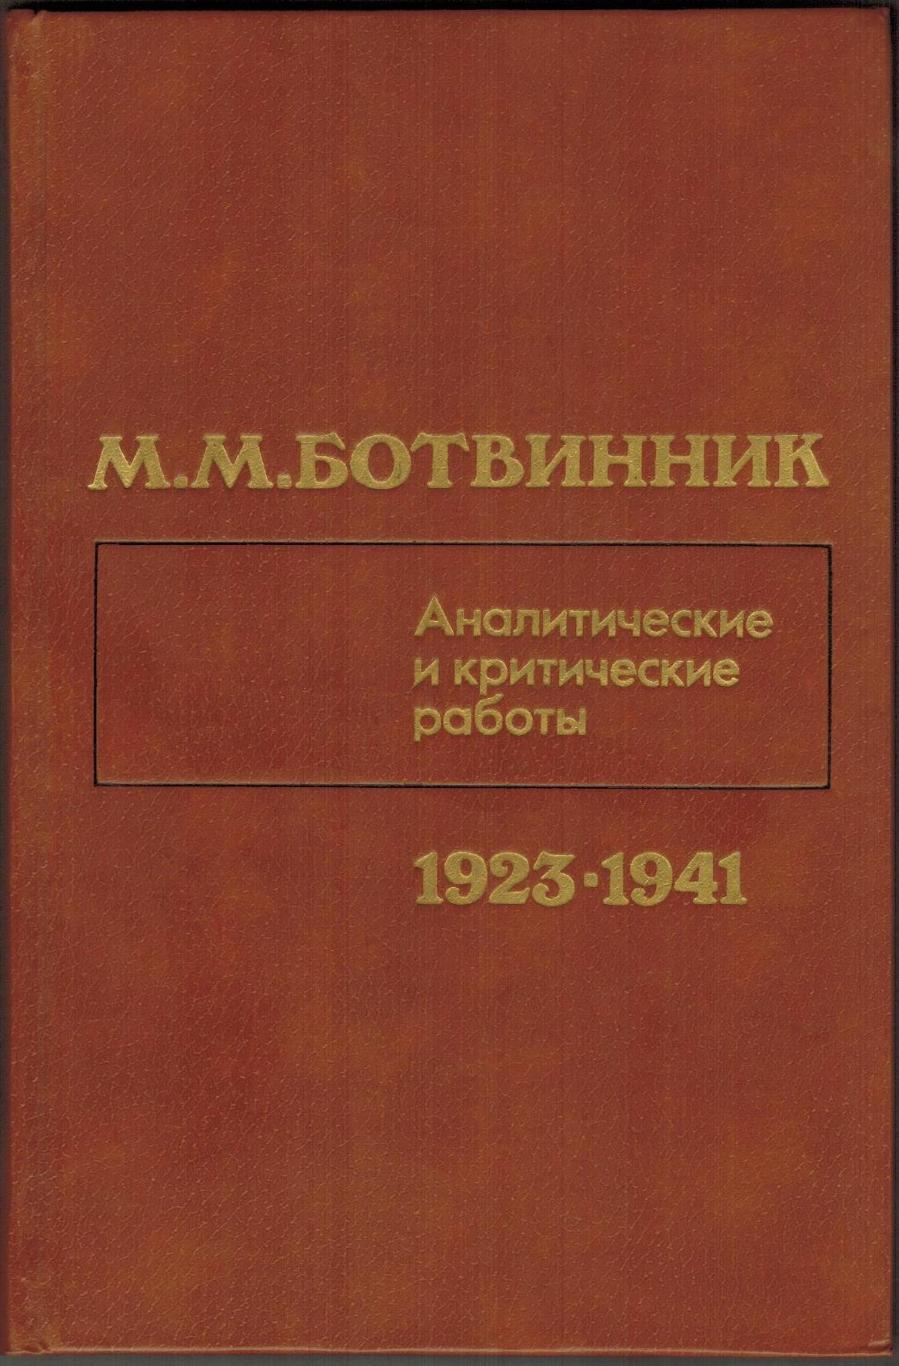 М.М. Ботвинник Аналитические и критические работы 1923-1941 (120 партий) 1984